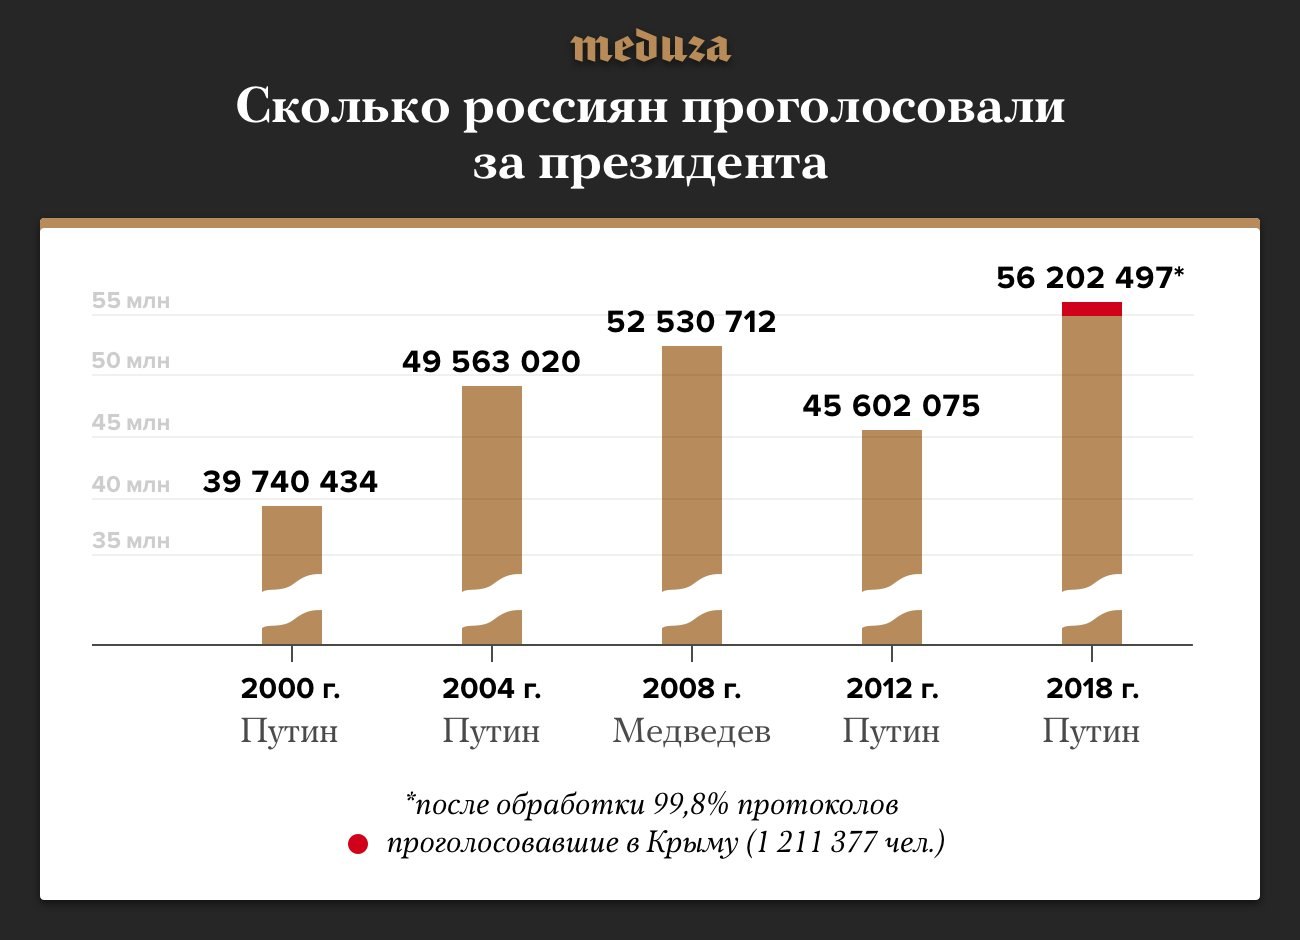 Сколько человек проголосовало сейчас. Сколько людей проголосовало за Путина. Сколько проголосовало за Путина в 2018. Количество людей за Путина. Сколько процентов людей за Путина.